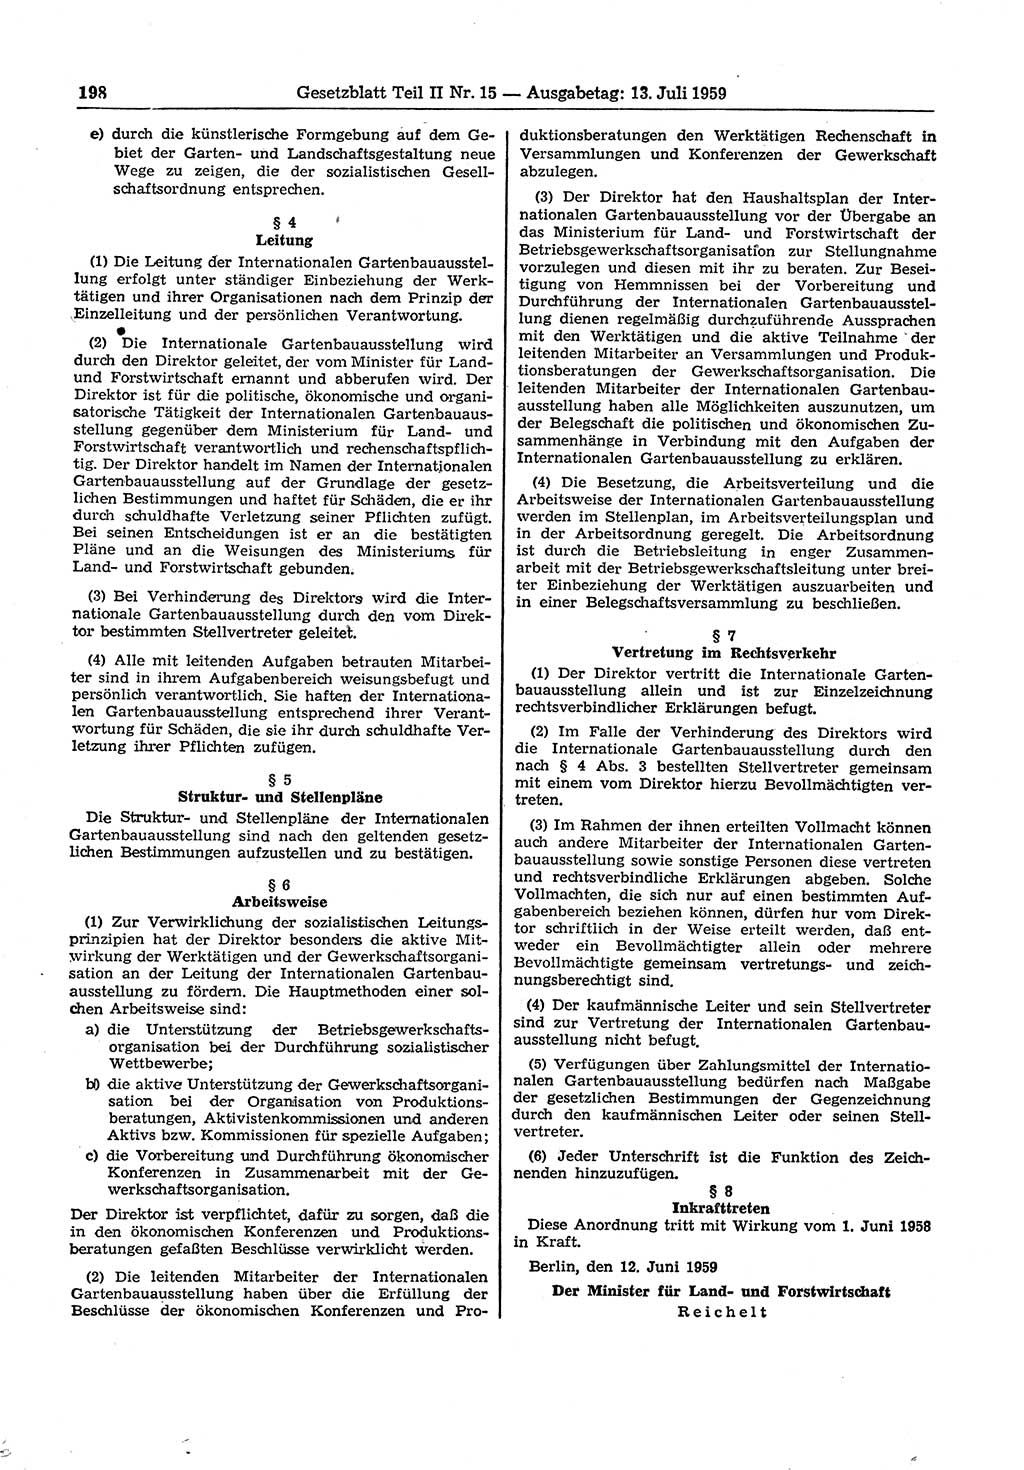 Gesetzblatt (GBl.) der Deutschen Demokratischen Republik (DDR) Teil ⅠⅠ 1959, Seite 198 (GBl. DDR ⅠⅠ 1959, S. 198)